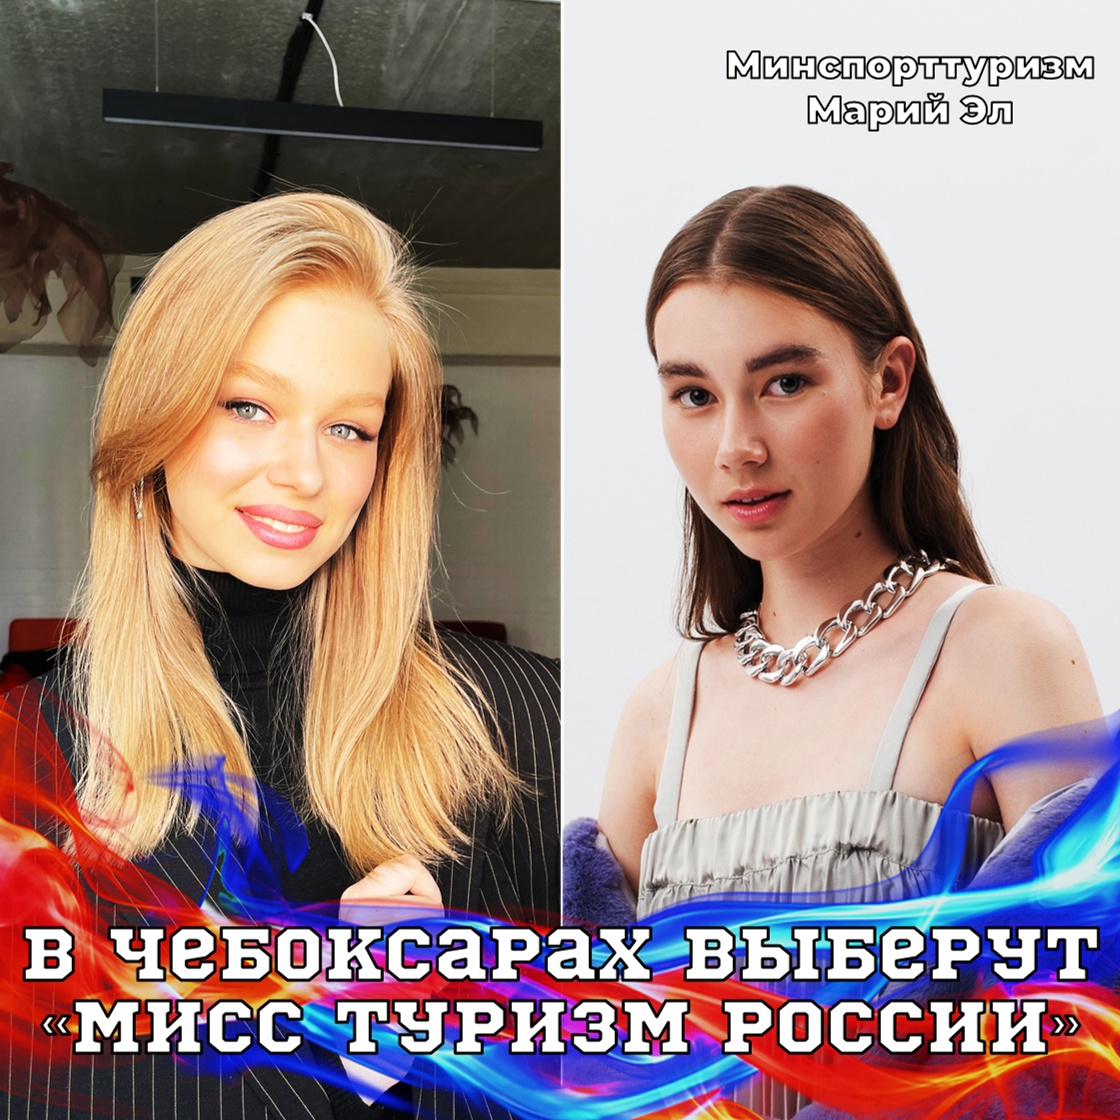 Две девушки из Марий Эл примут участие во Всероссийском конкурсе красоты